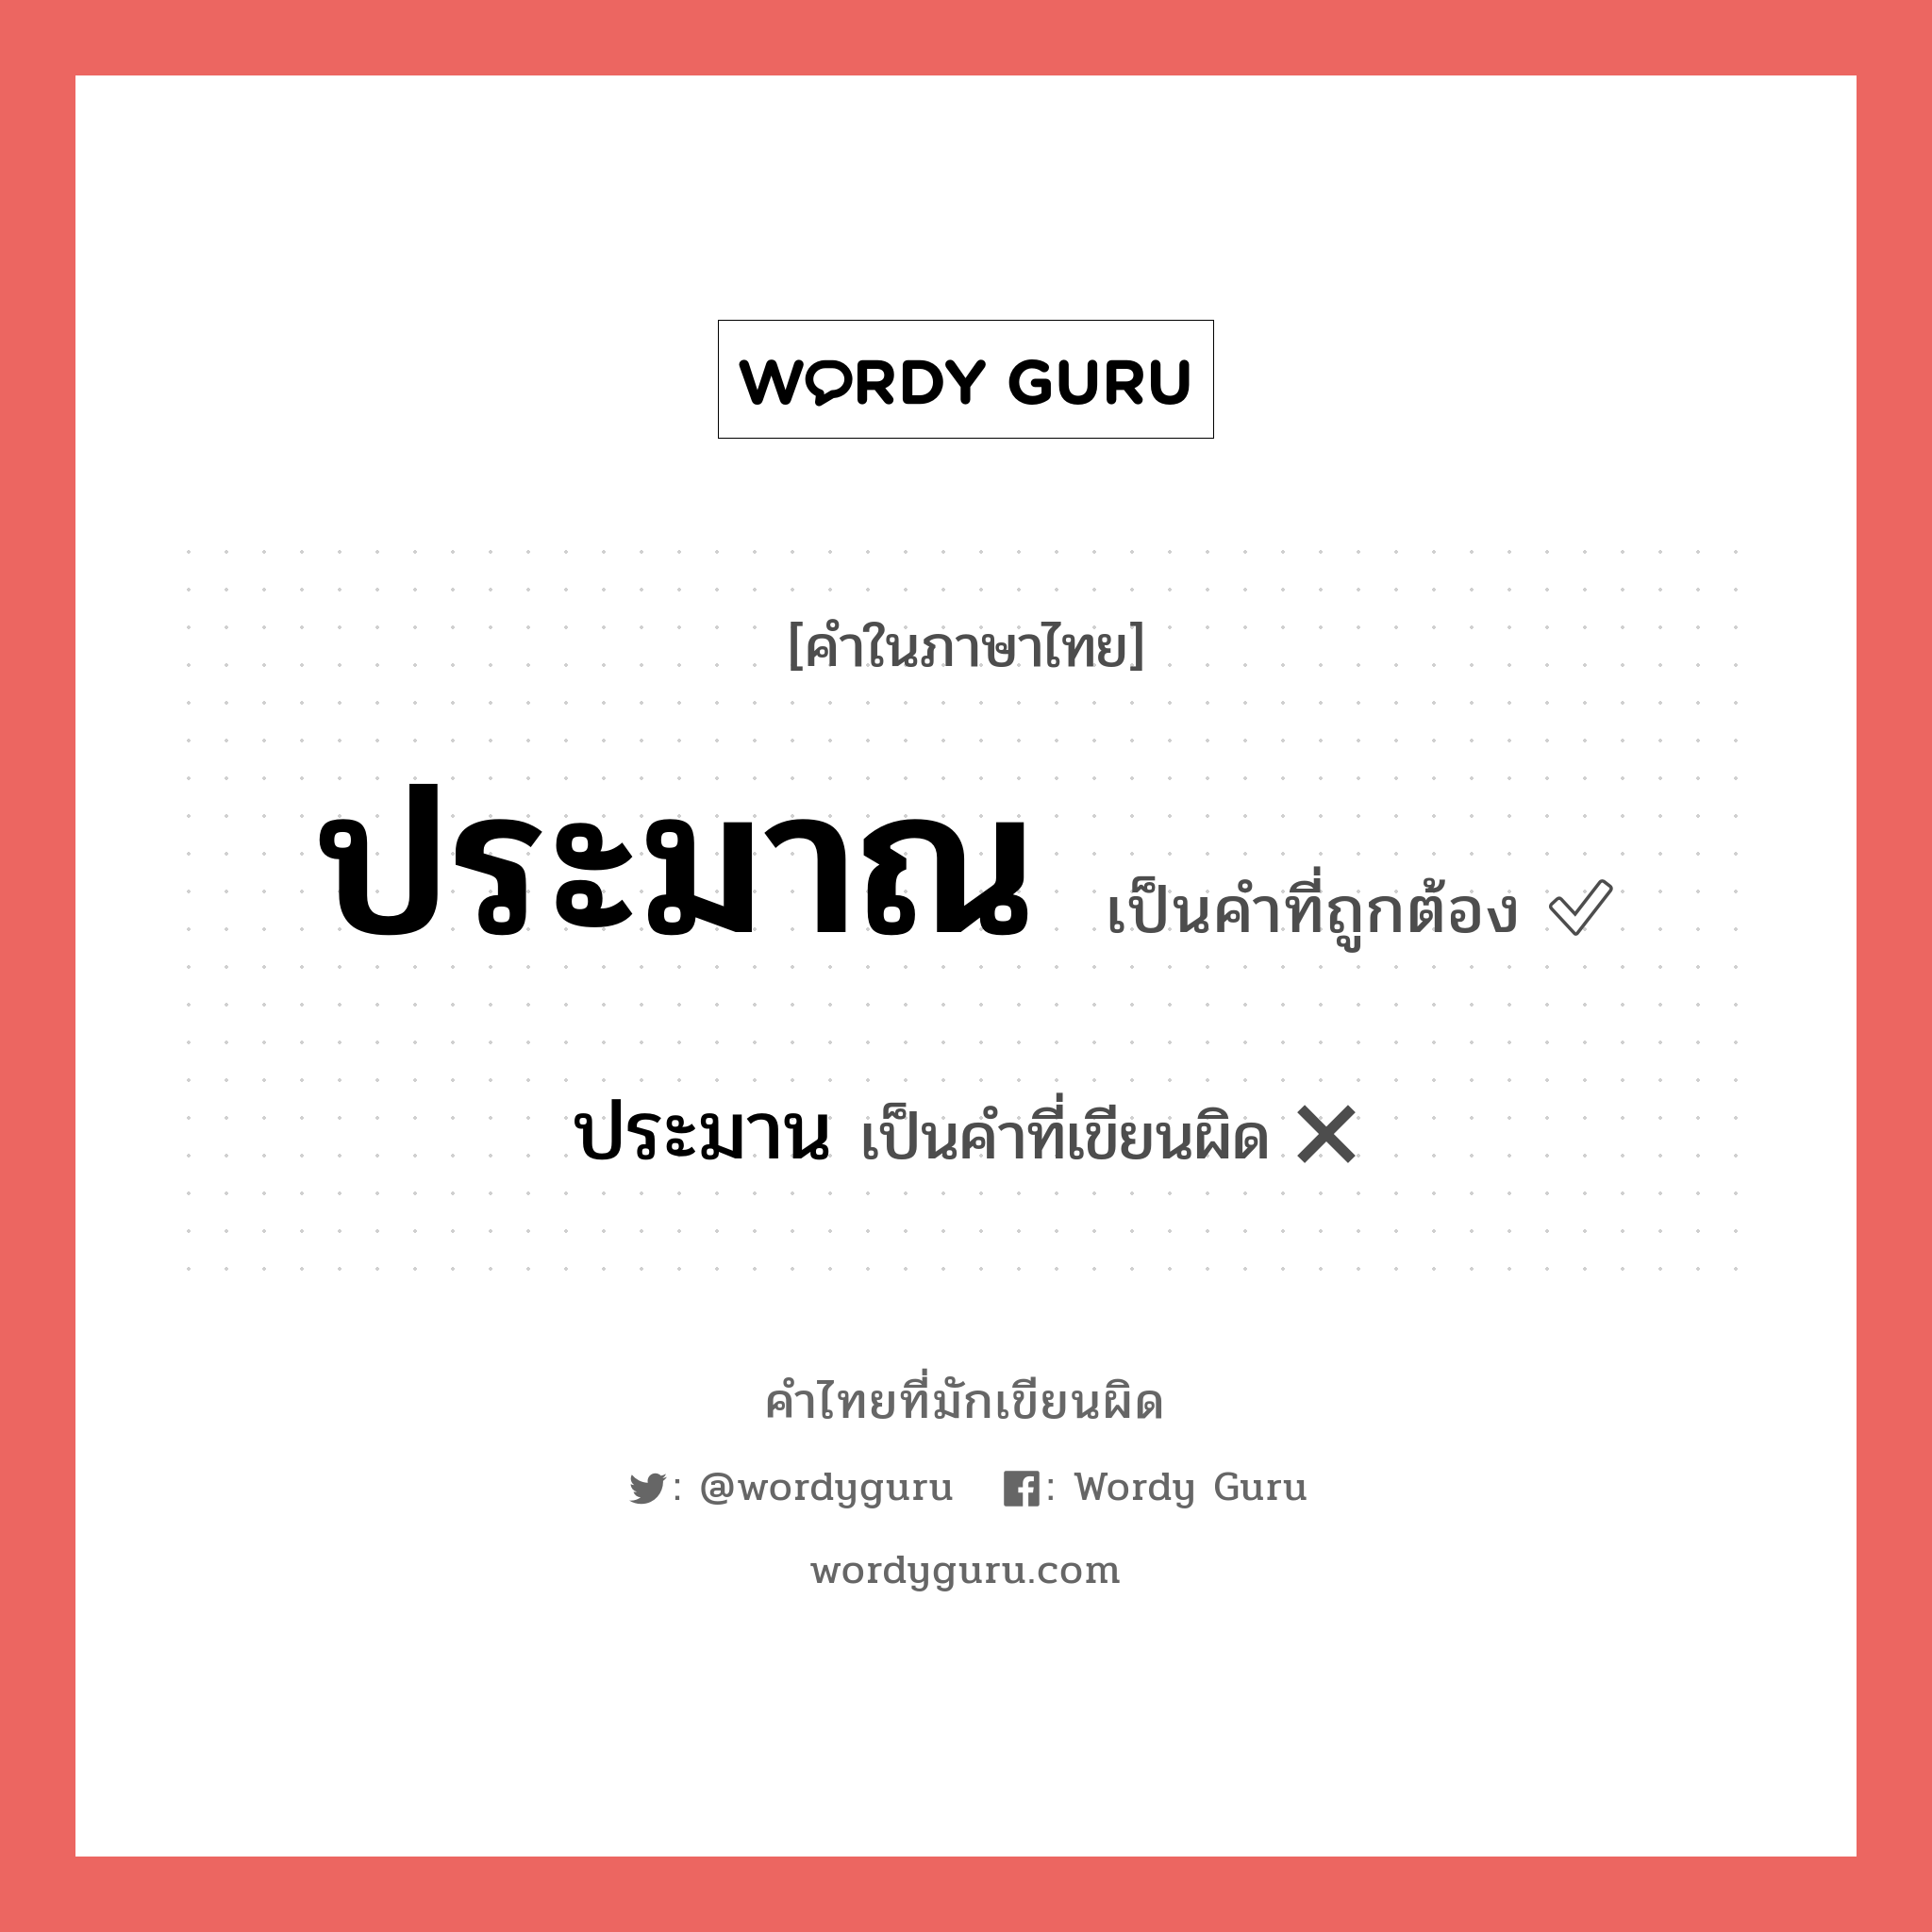 ประมาน หรือ ประมาณ คำไหนเขียนถูก?, คำในภาษาไทยที่มักเขียนผิด ประมาน คำที่ผิด ❌ ประมาณ